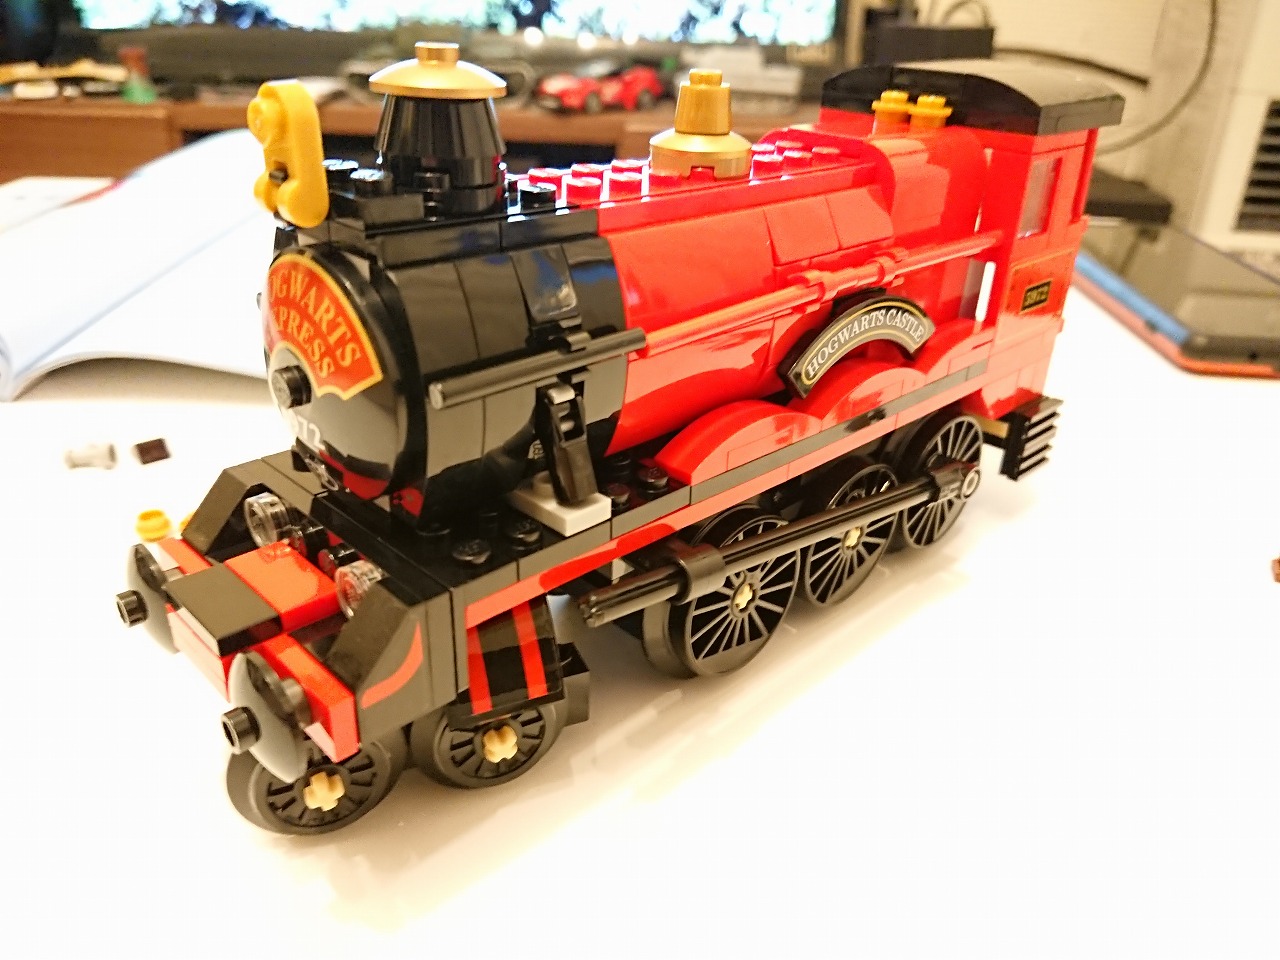 レゴ(LEGO) ハリー・ポッター ホグワーツ特急 75955 を作ってみた(その2)～機関車の作成～